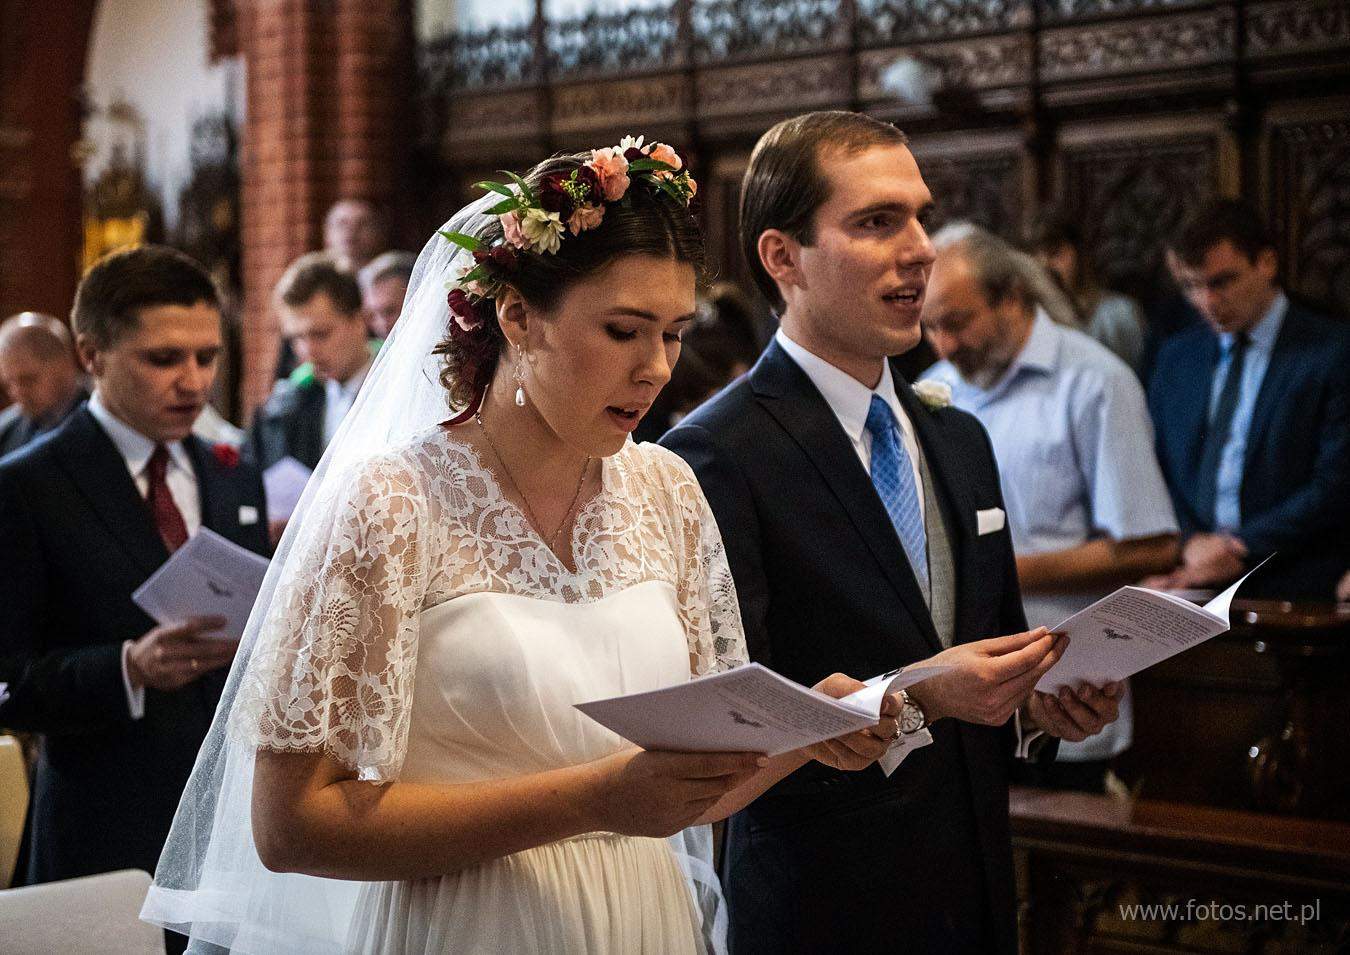 Ślub w rycie trydenckim we Wrocławiu